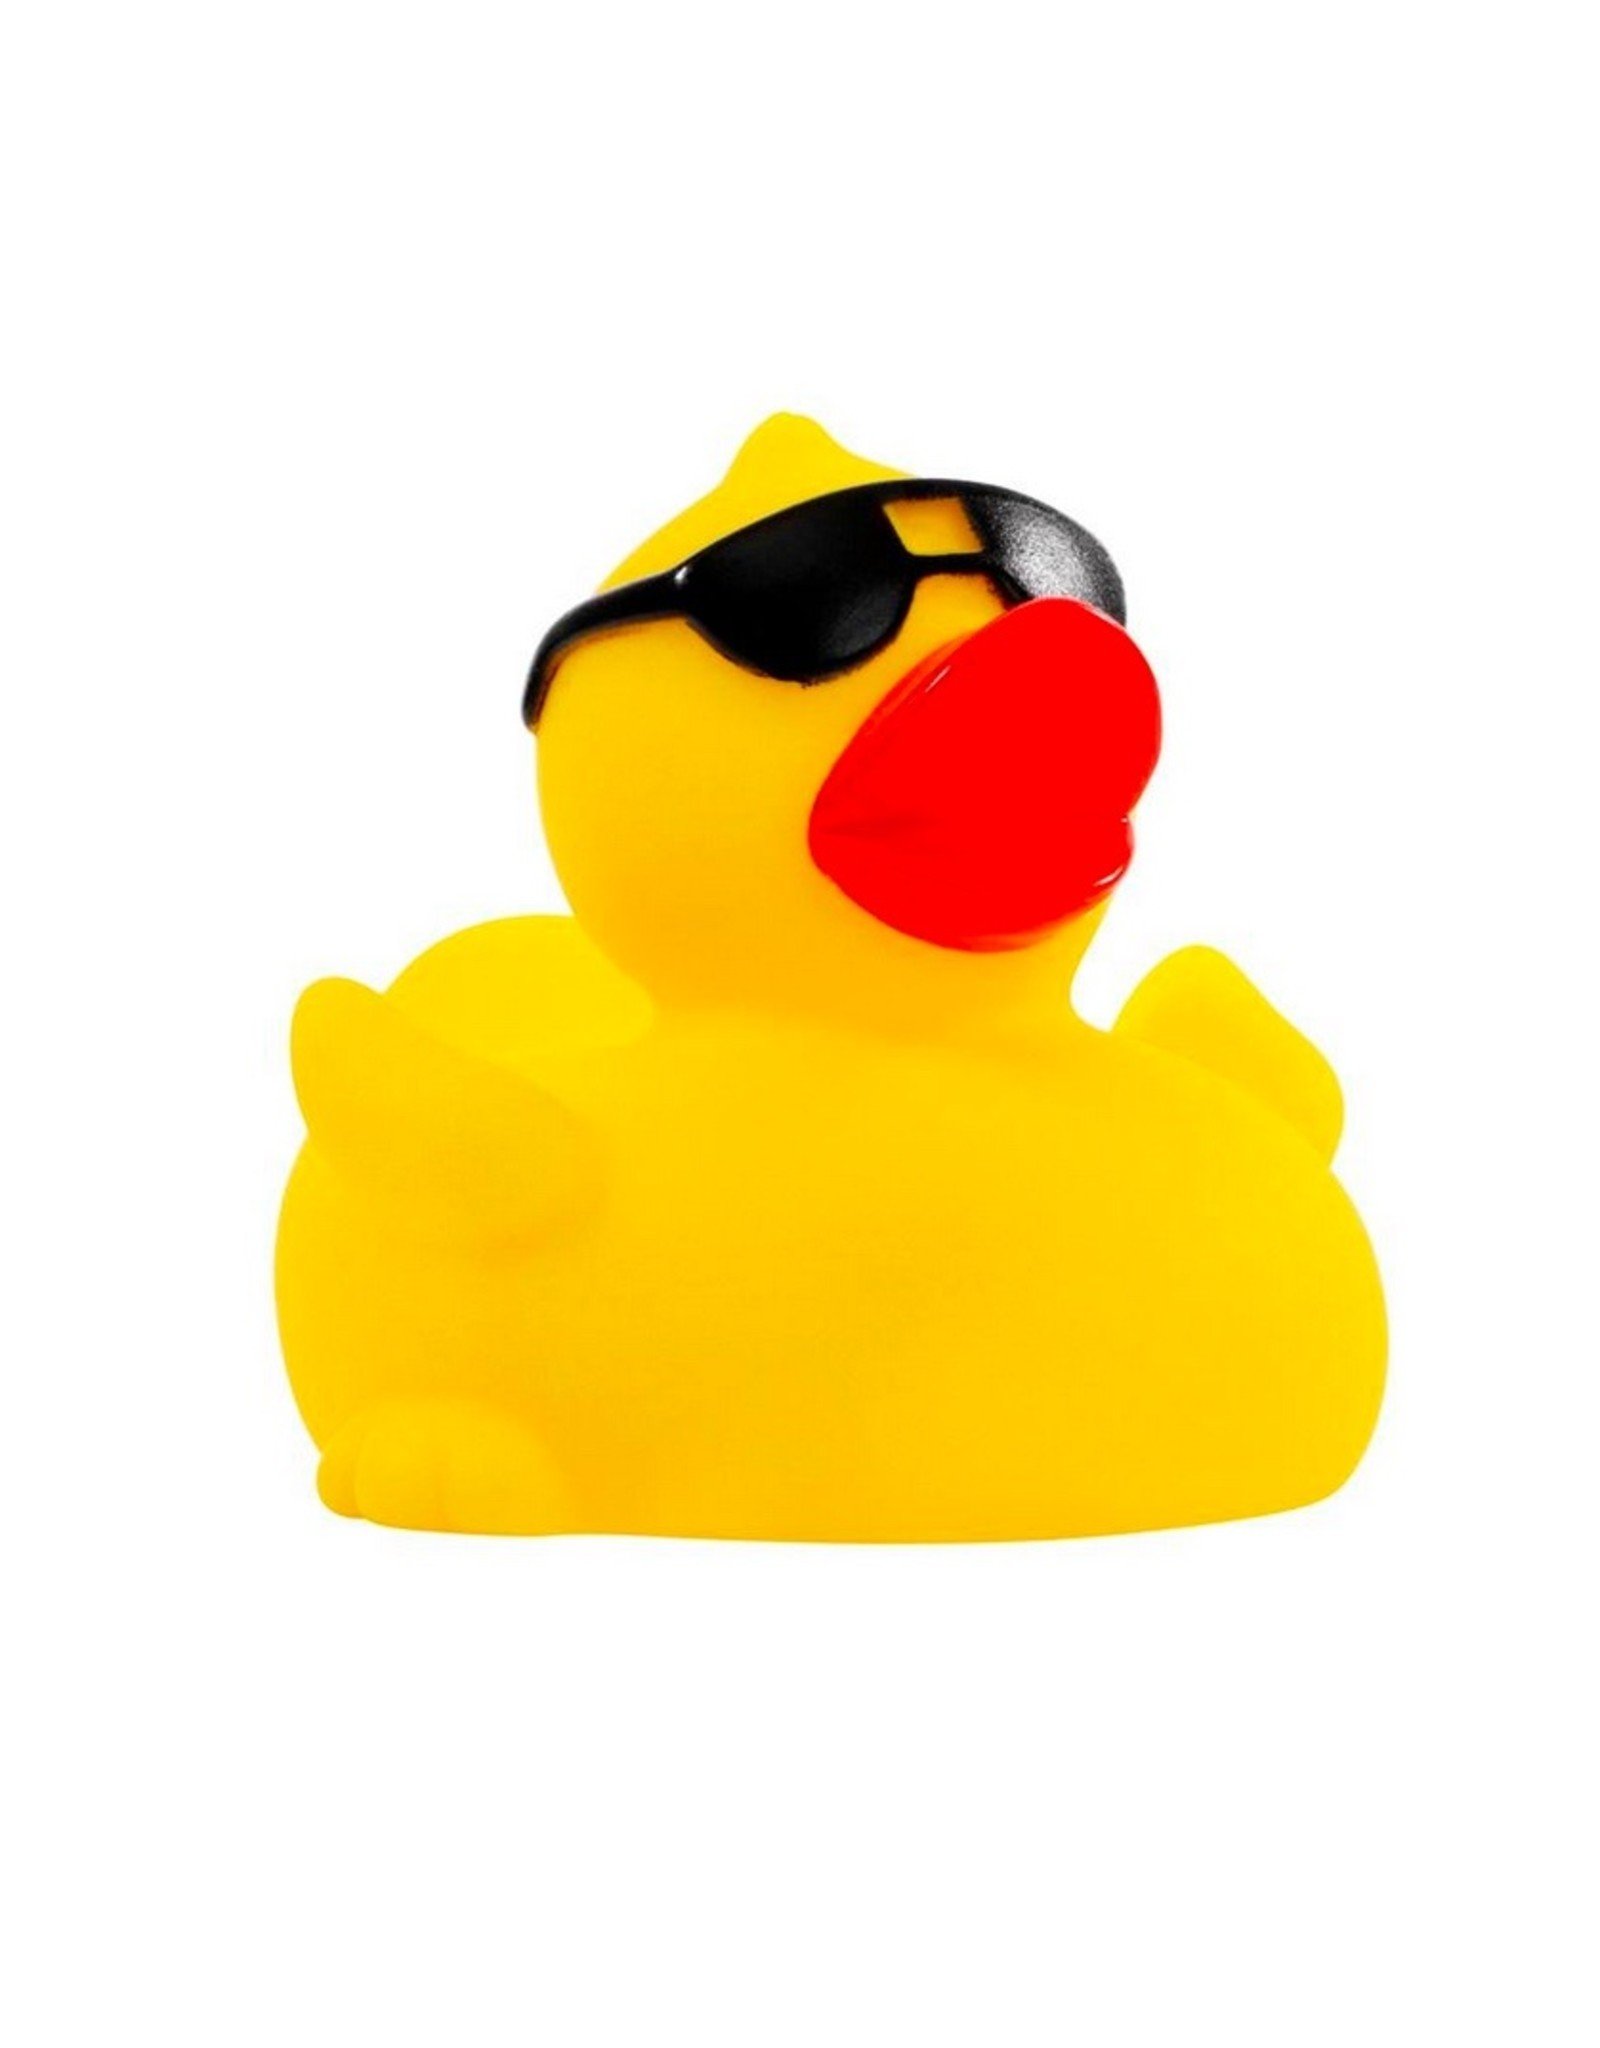 Sunglasses Rubber Duck